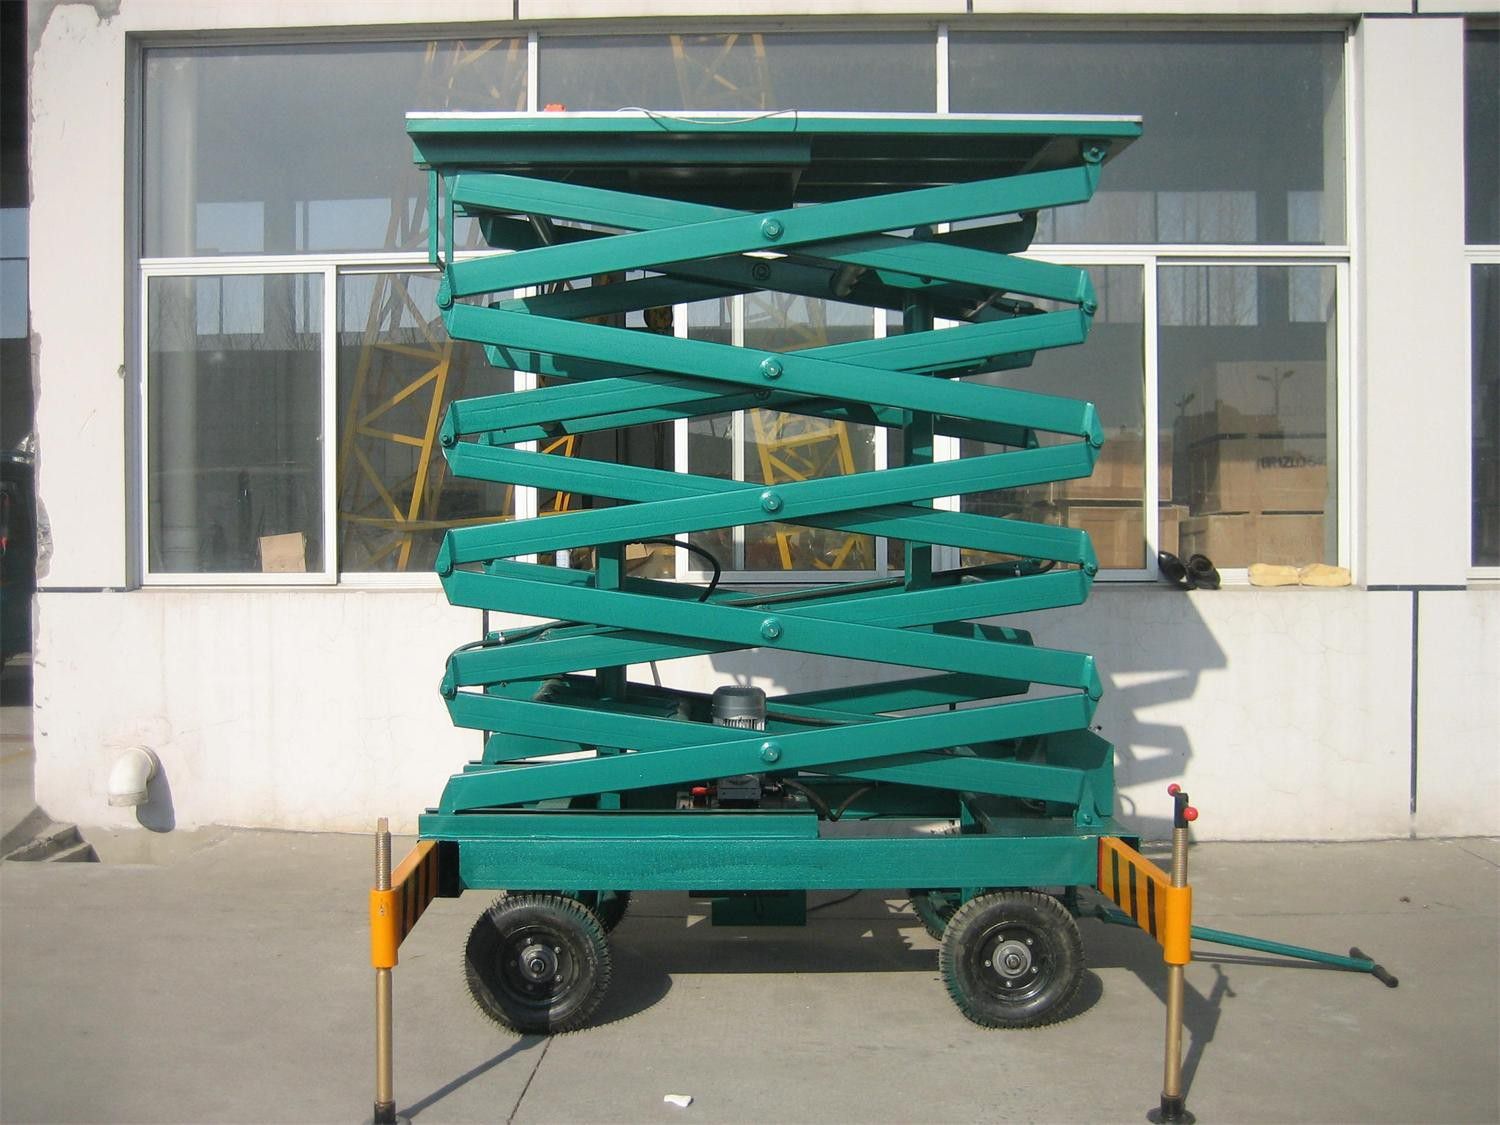 Yeleniagura, PolandVehicle mounted hydraulic lifting platformHot market